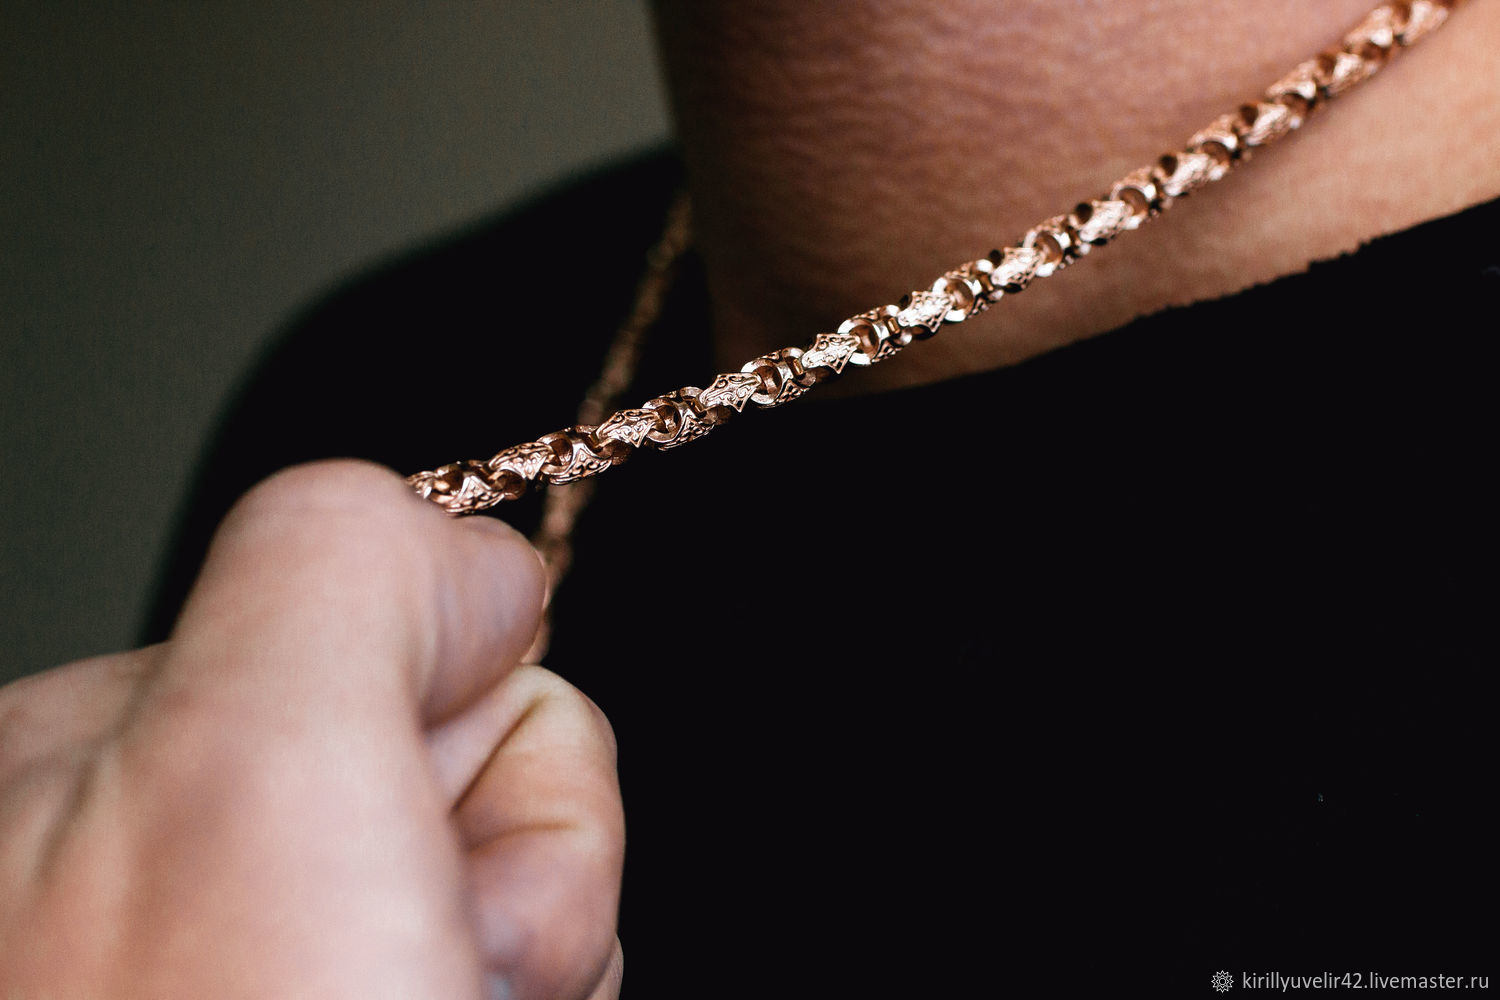 Панцирное плетение цепочки золото фото мужские